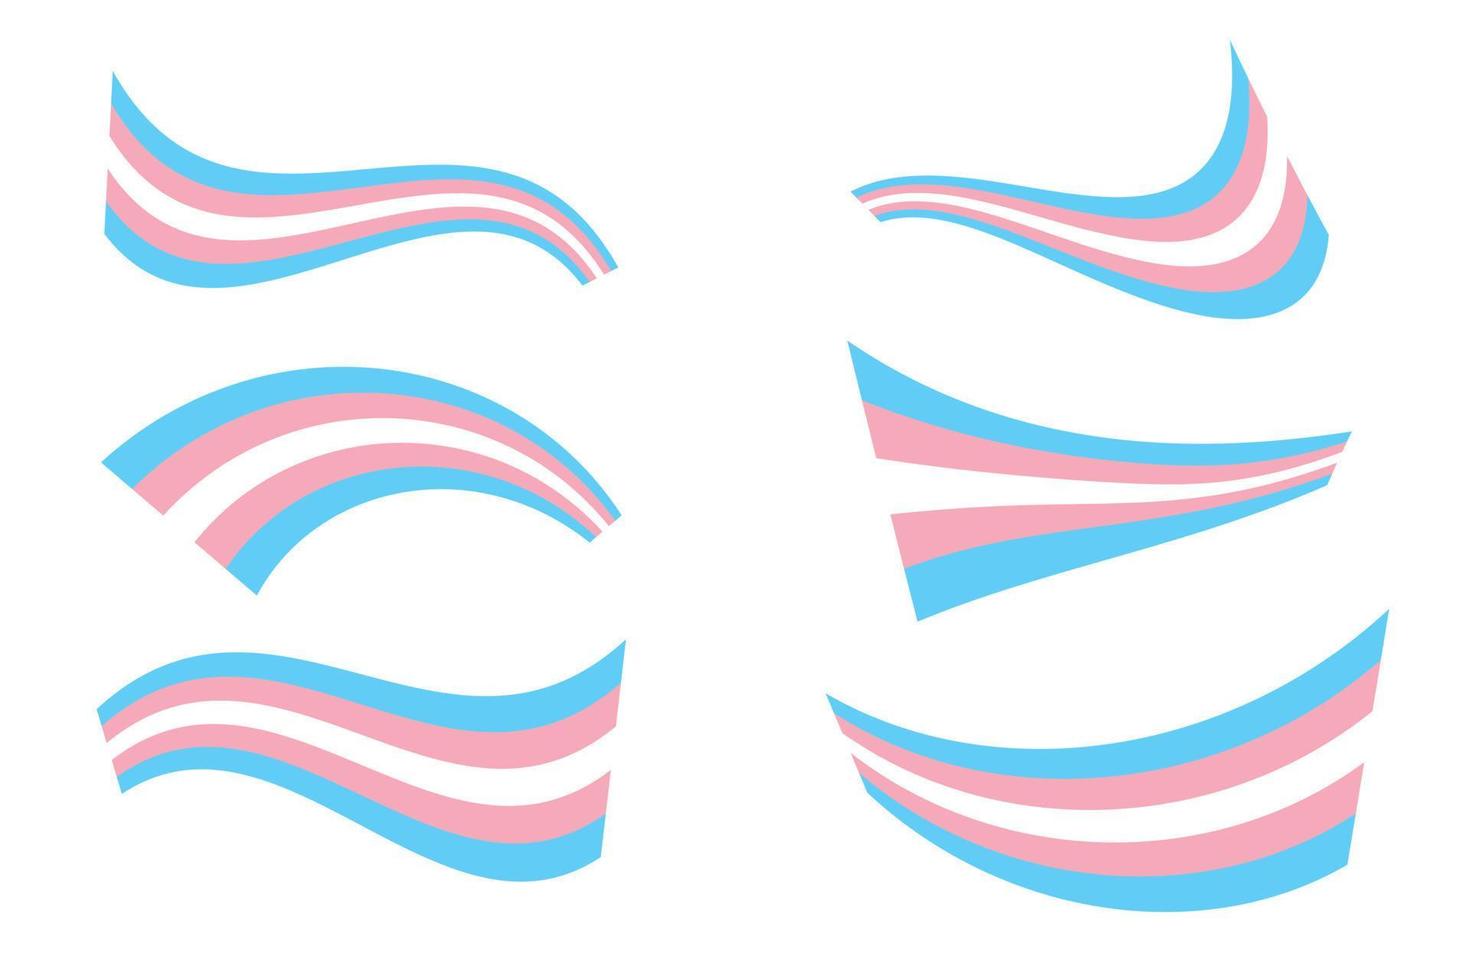 transgender prideflagga - ljusblå, rosa och vitrandig prideflagga, symbol för transgendergemenskapen. LGbt symboler set samling av olika tvinnade inslagna former flaggor vektor